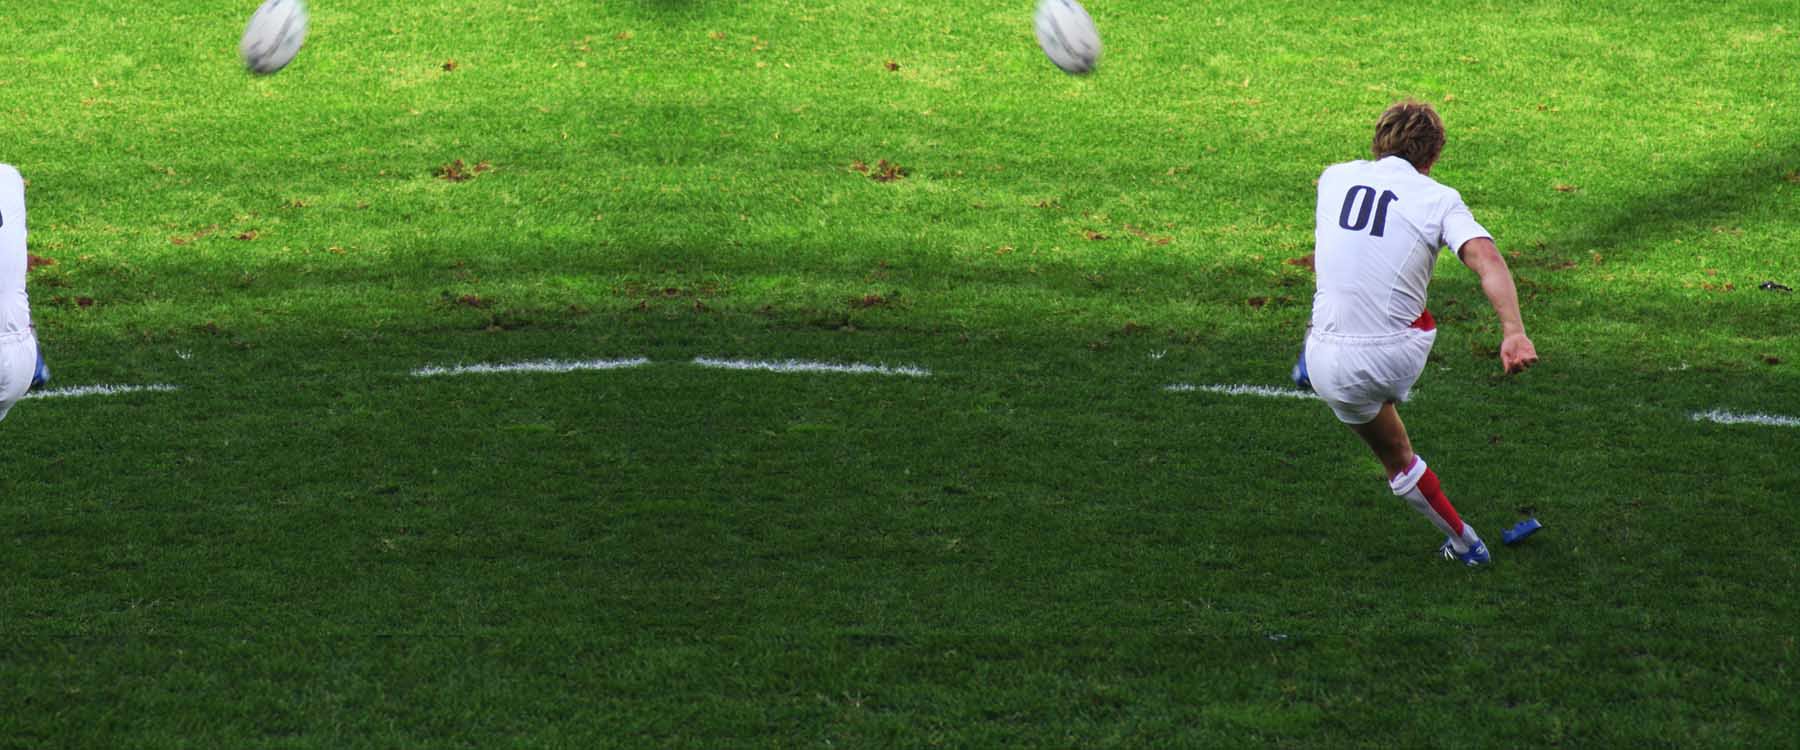 rugby-trainingskamp.jpg